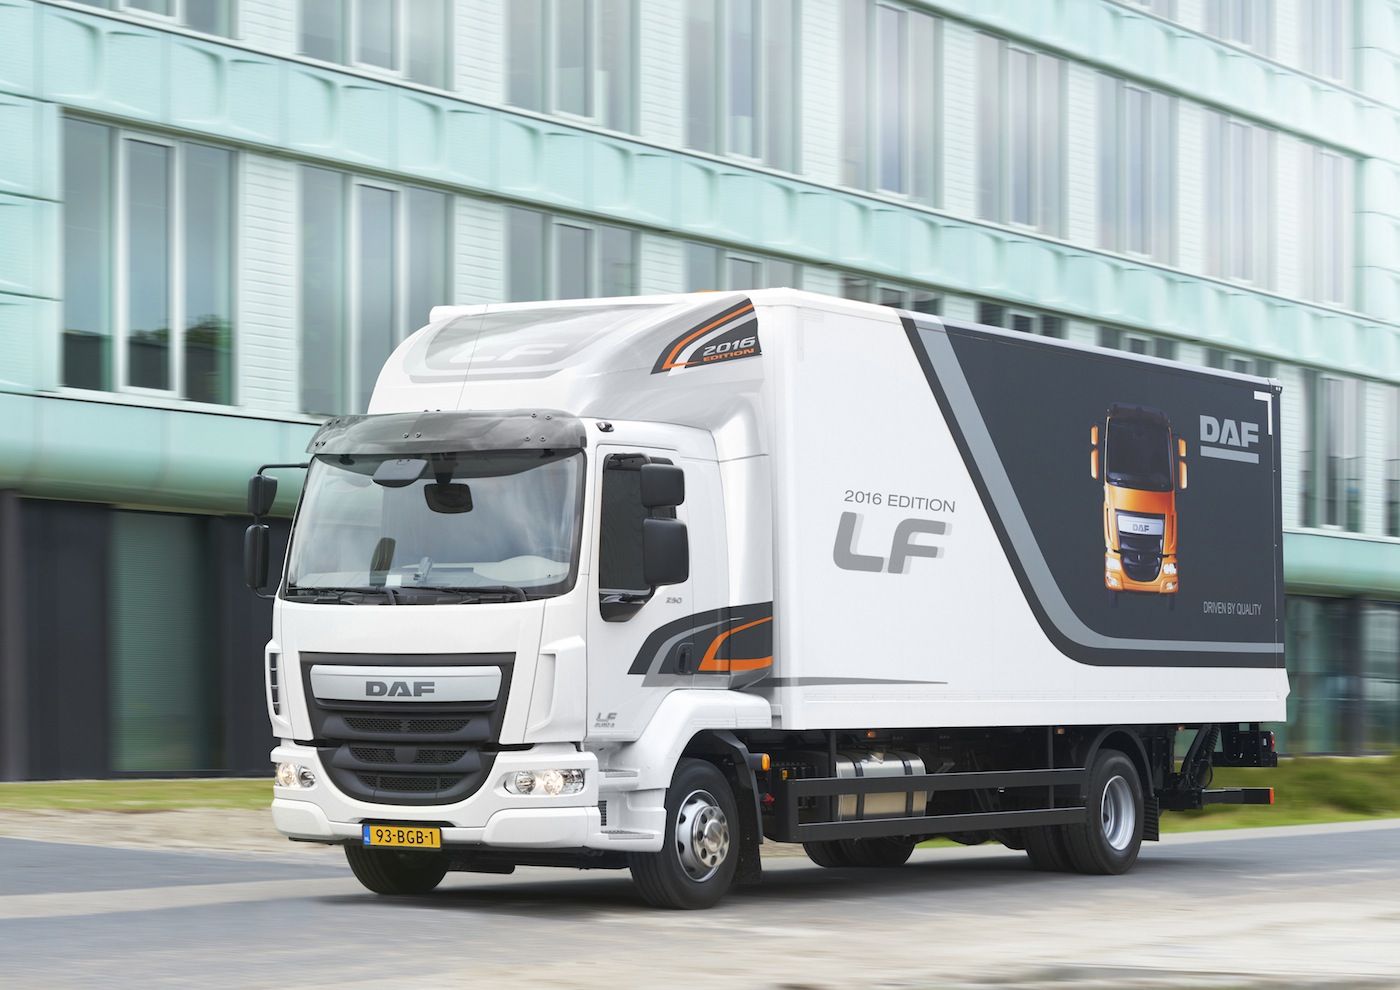 DAF presenta la nueva edicion del camion LF